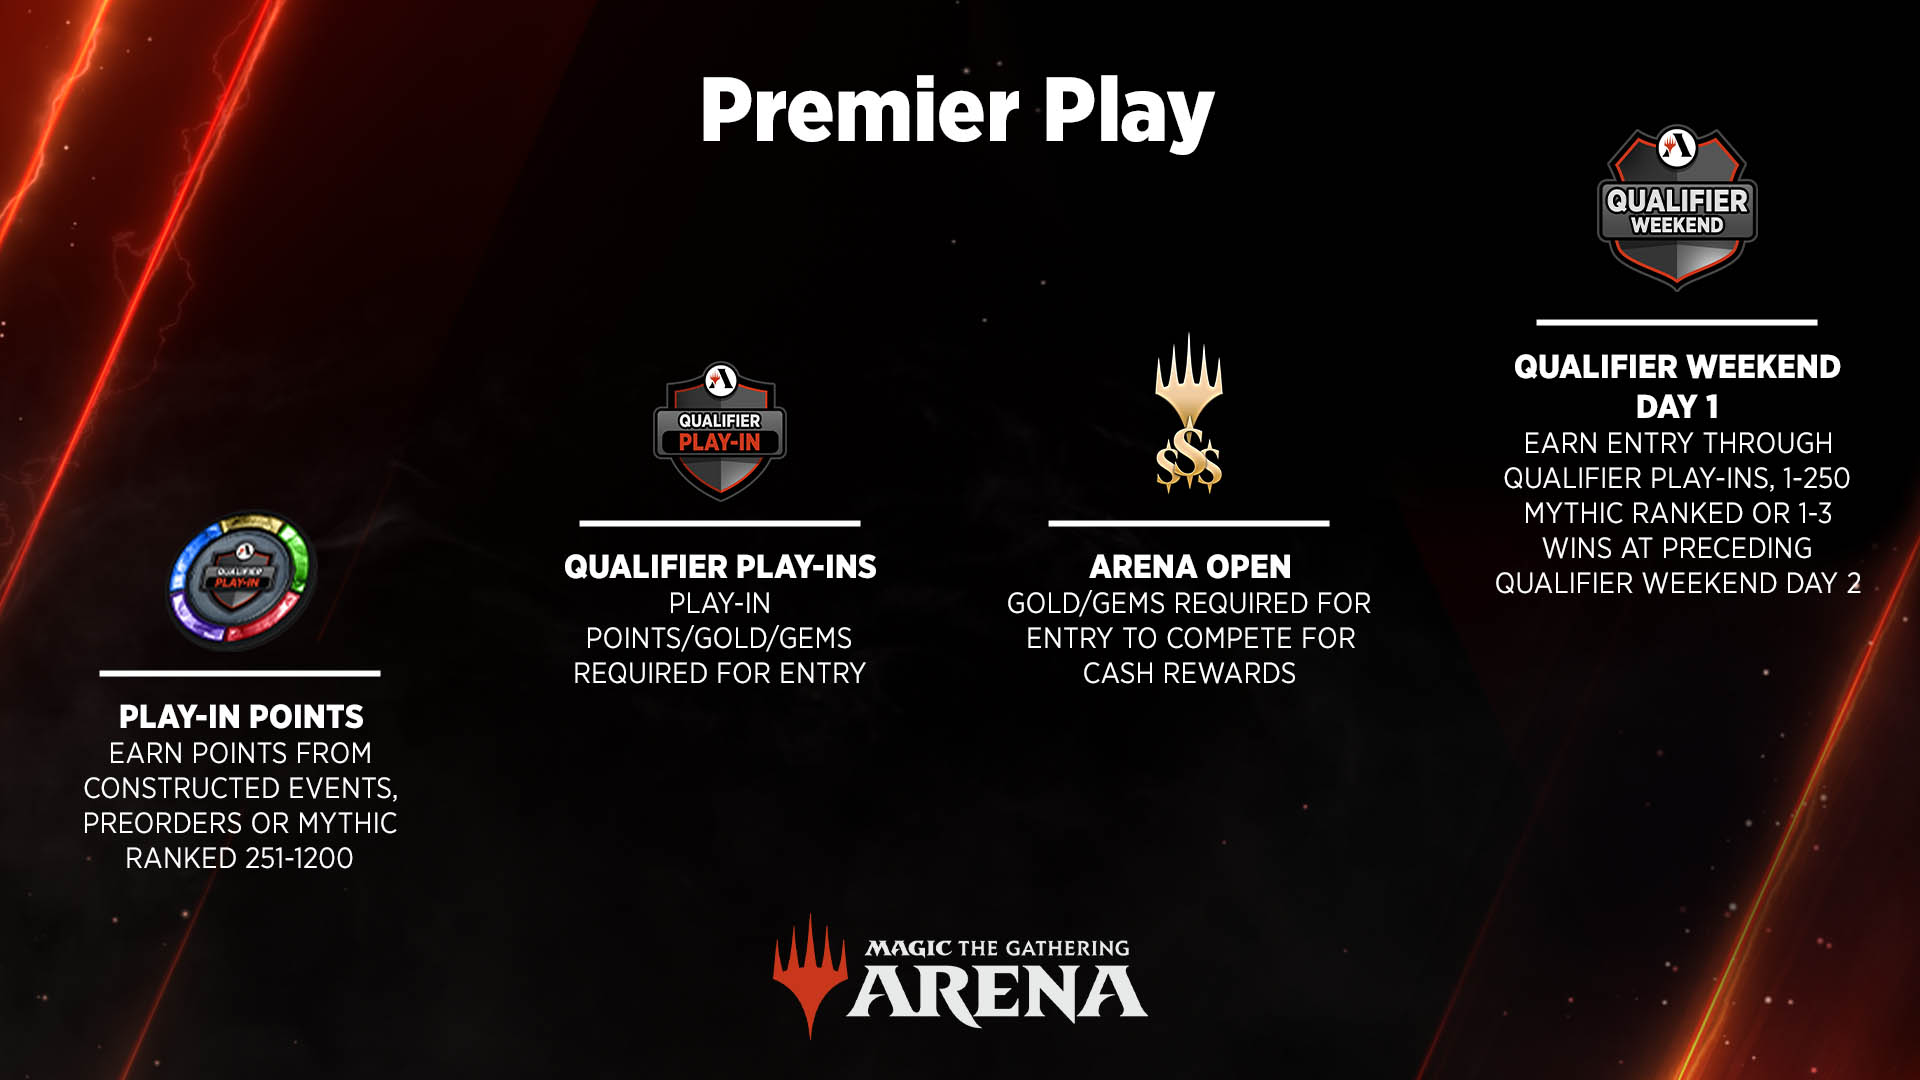 El juego premier otorga puntos Play-In para los Qualifier Play-Ins y Arena Opens, que conducen a los eventos del primer día de los Qualifier Weekends